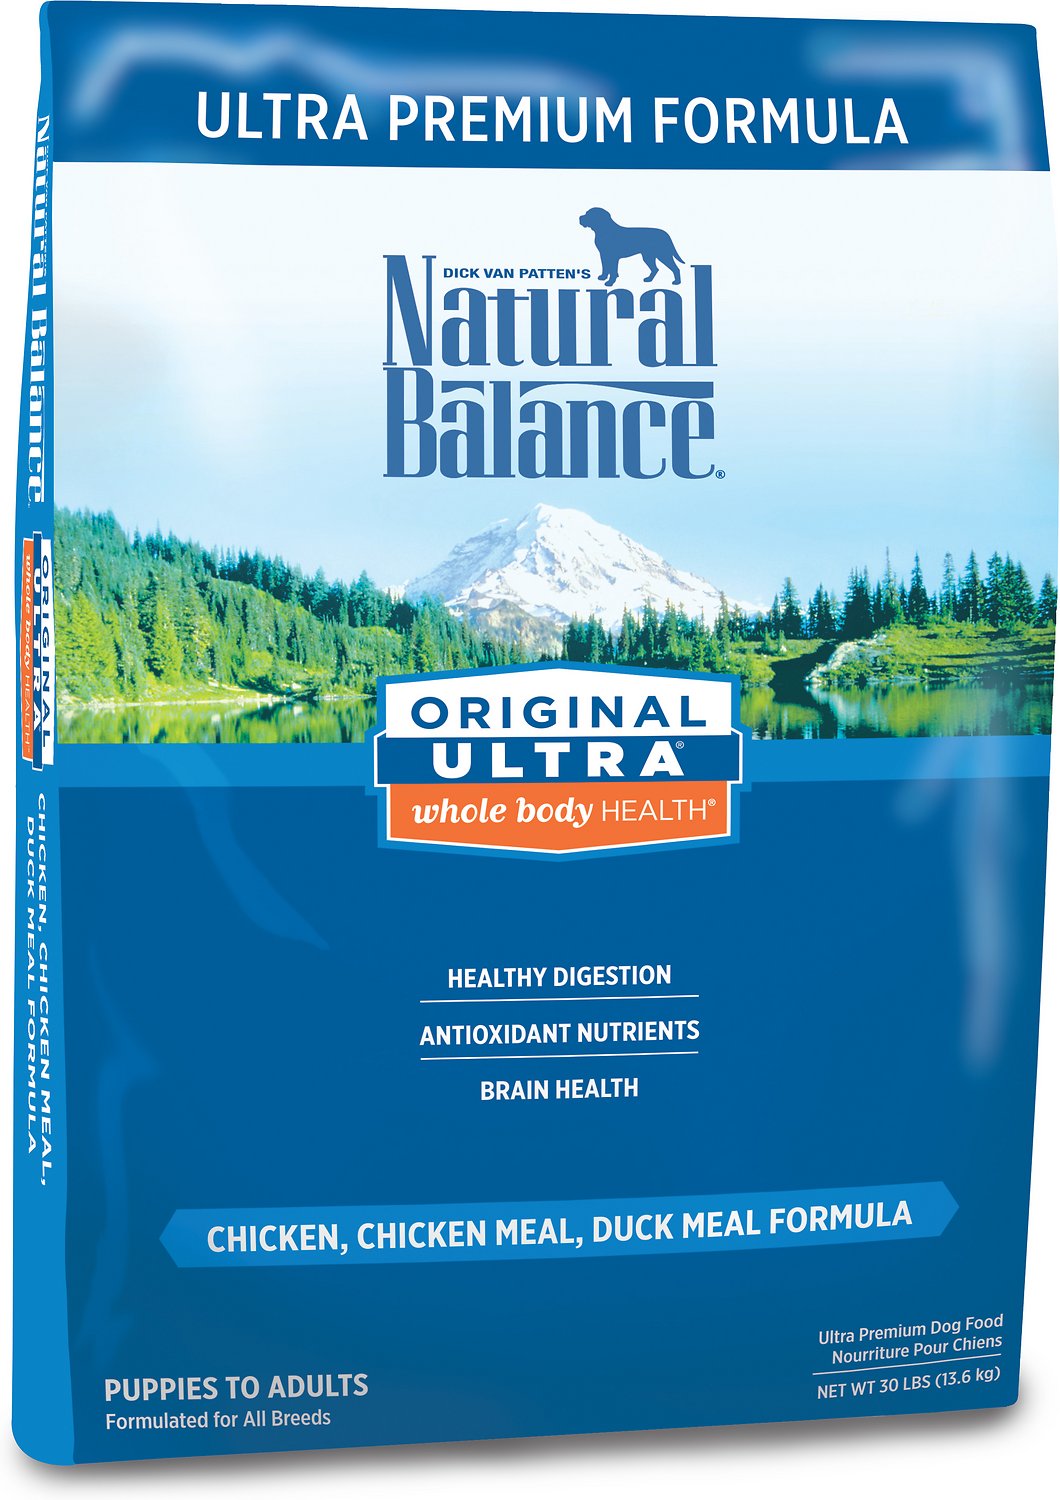 Natural Balance Original Ultra Premium